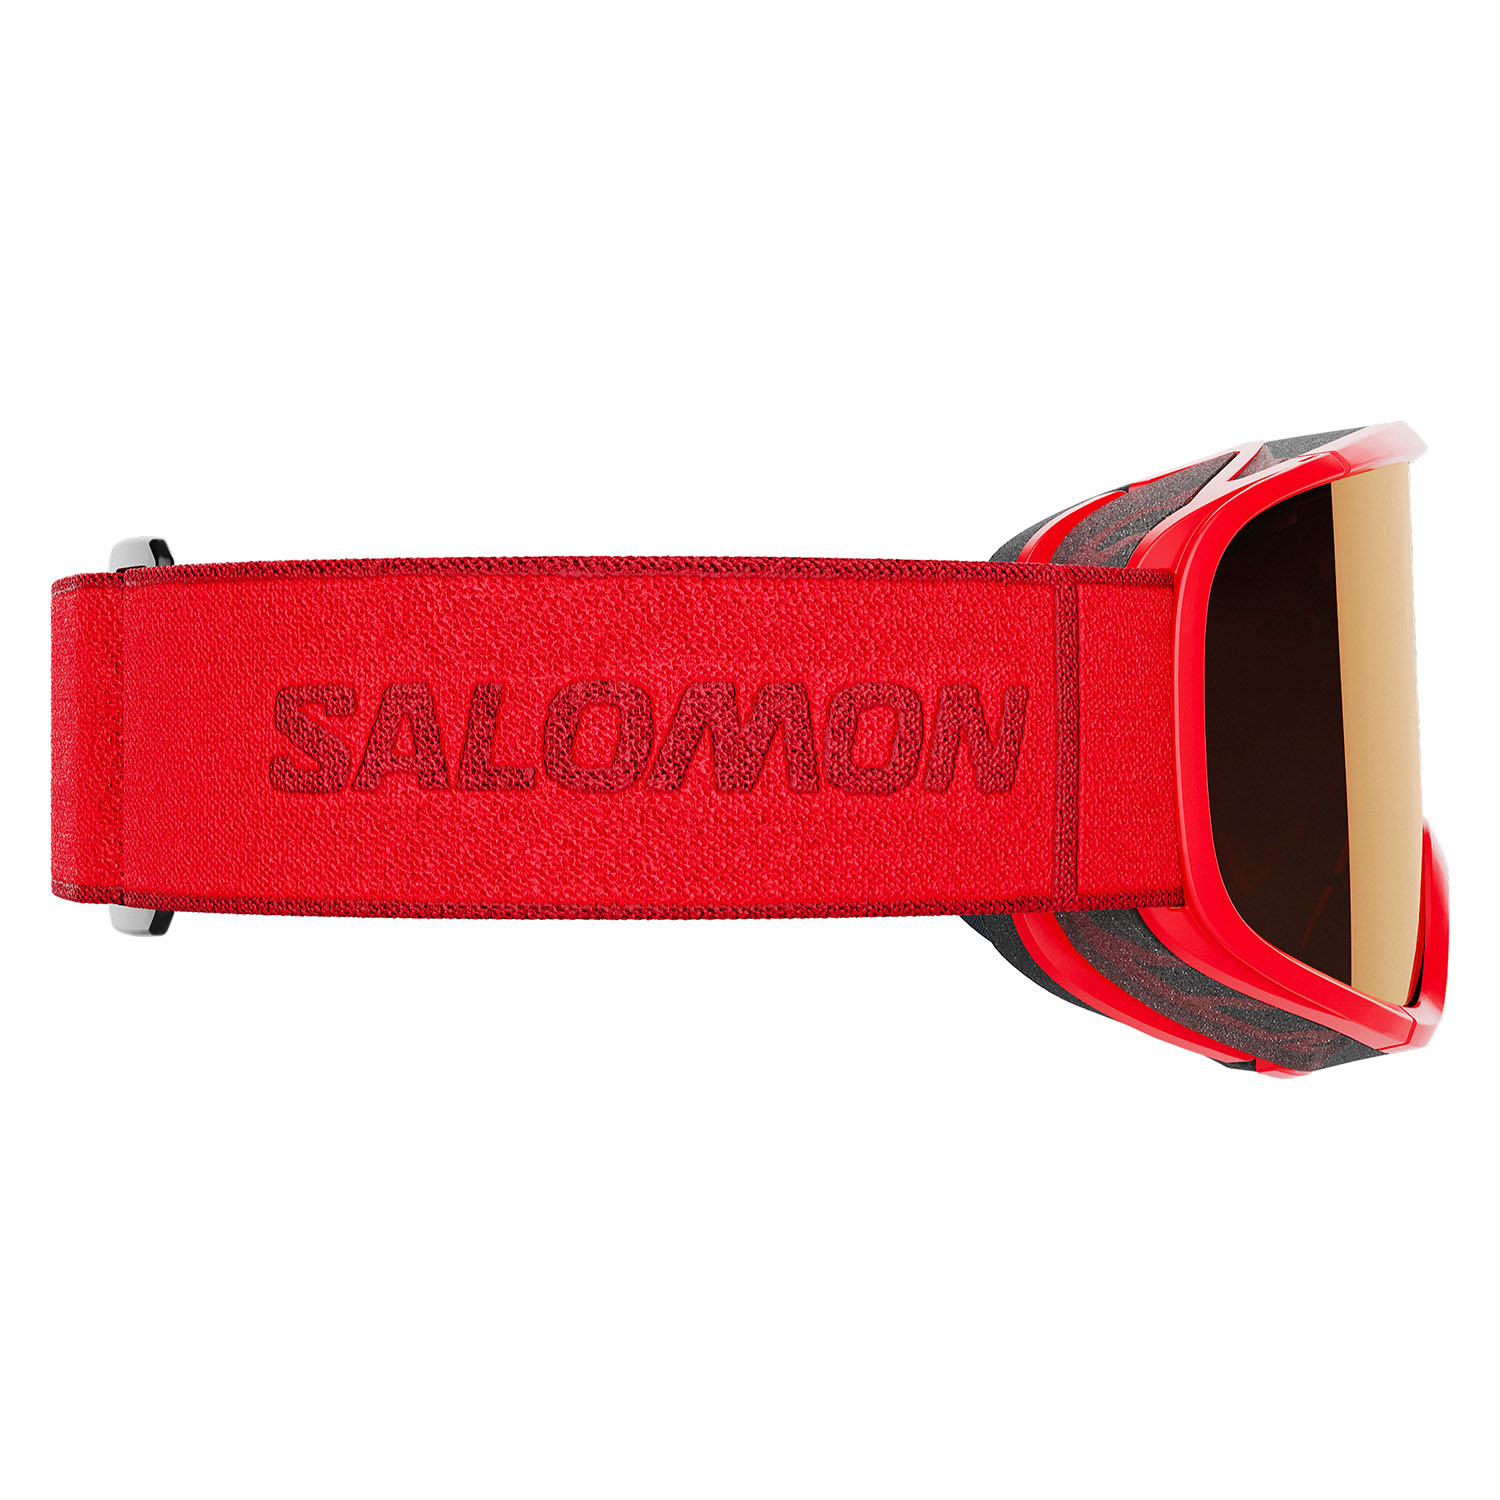 Очки горнолыжные SALOMON Aksium 2.0 Access Red